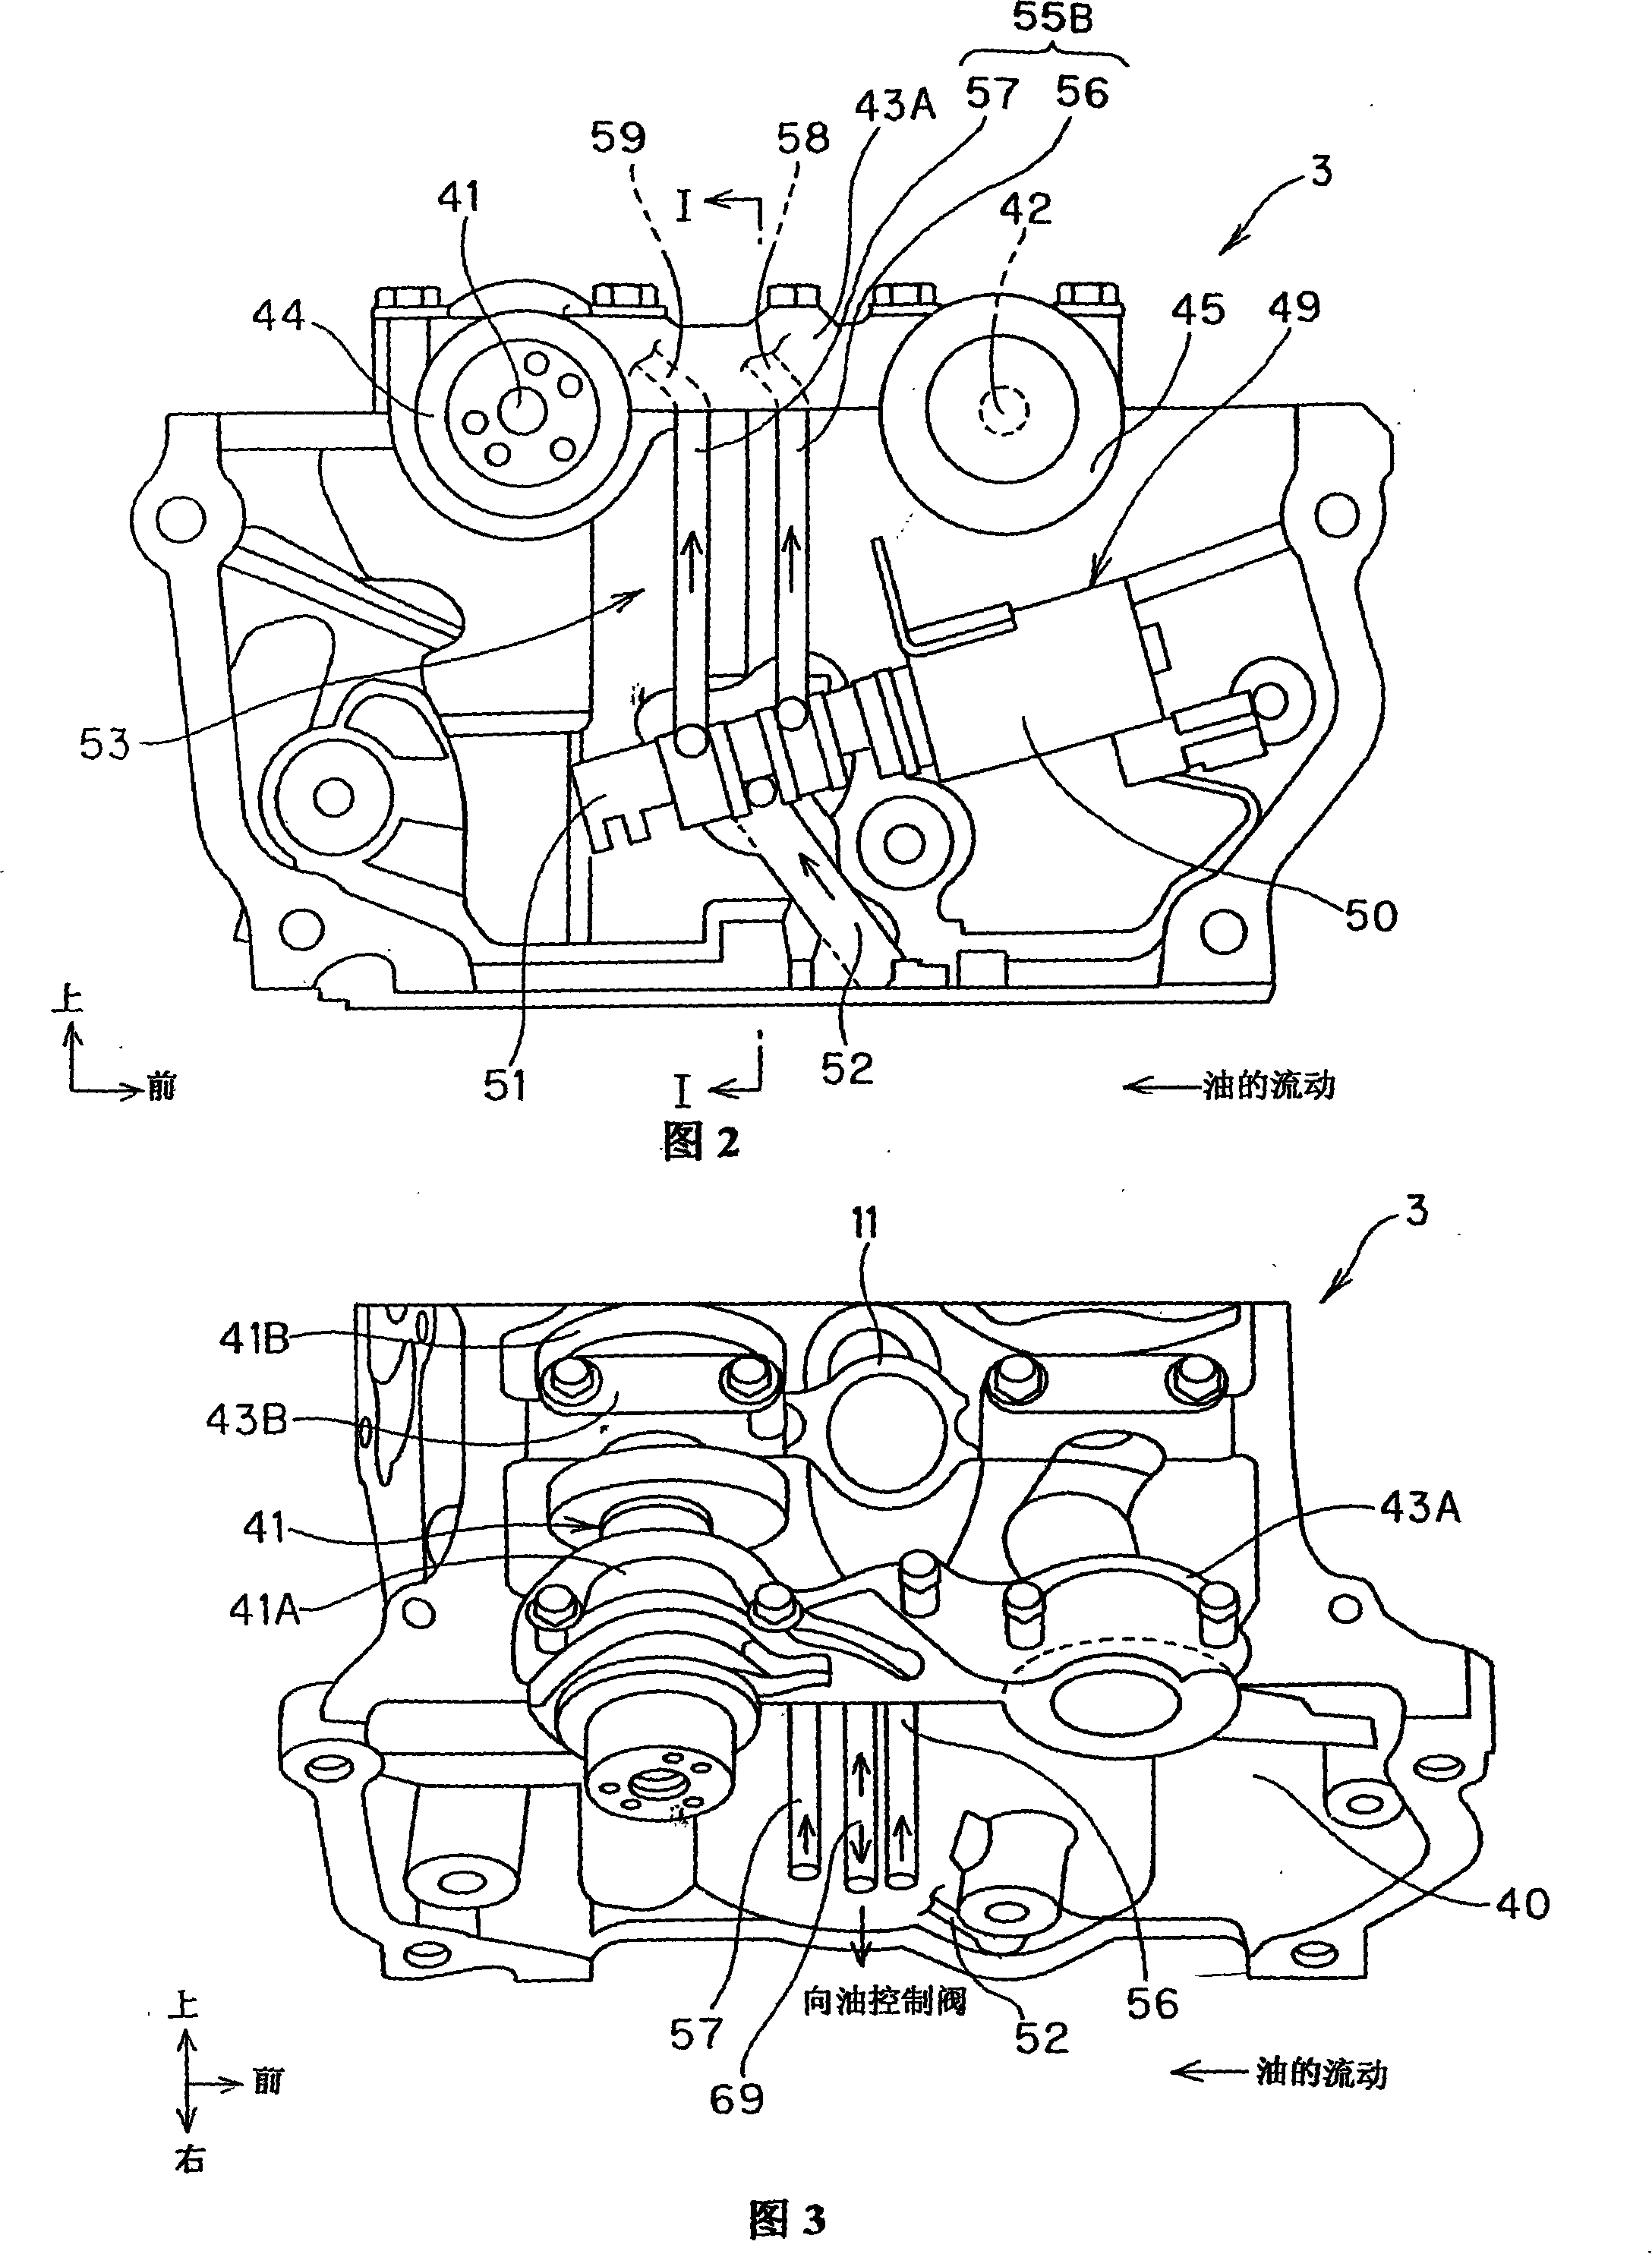 Engine cylinder head structure